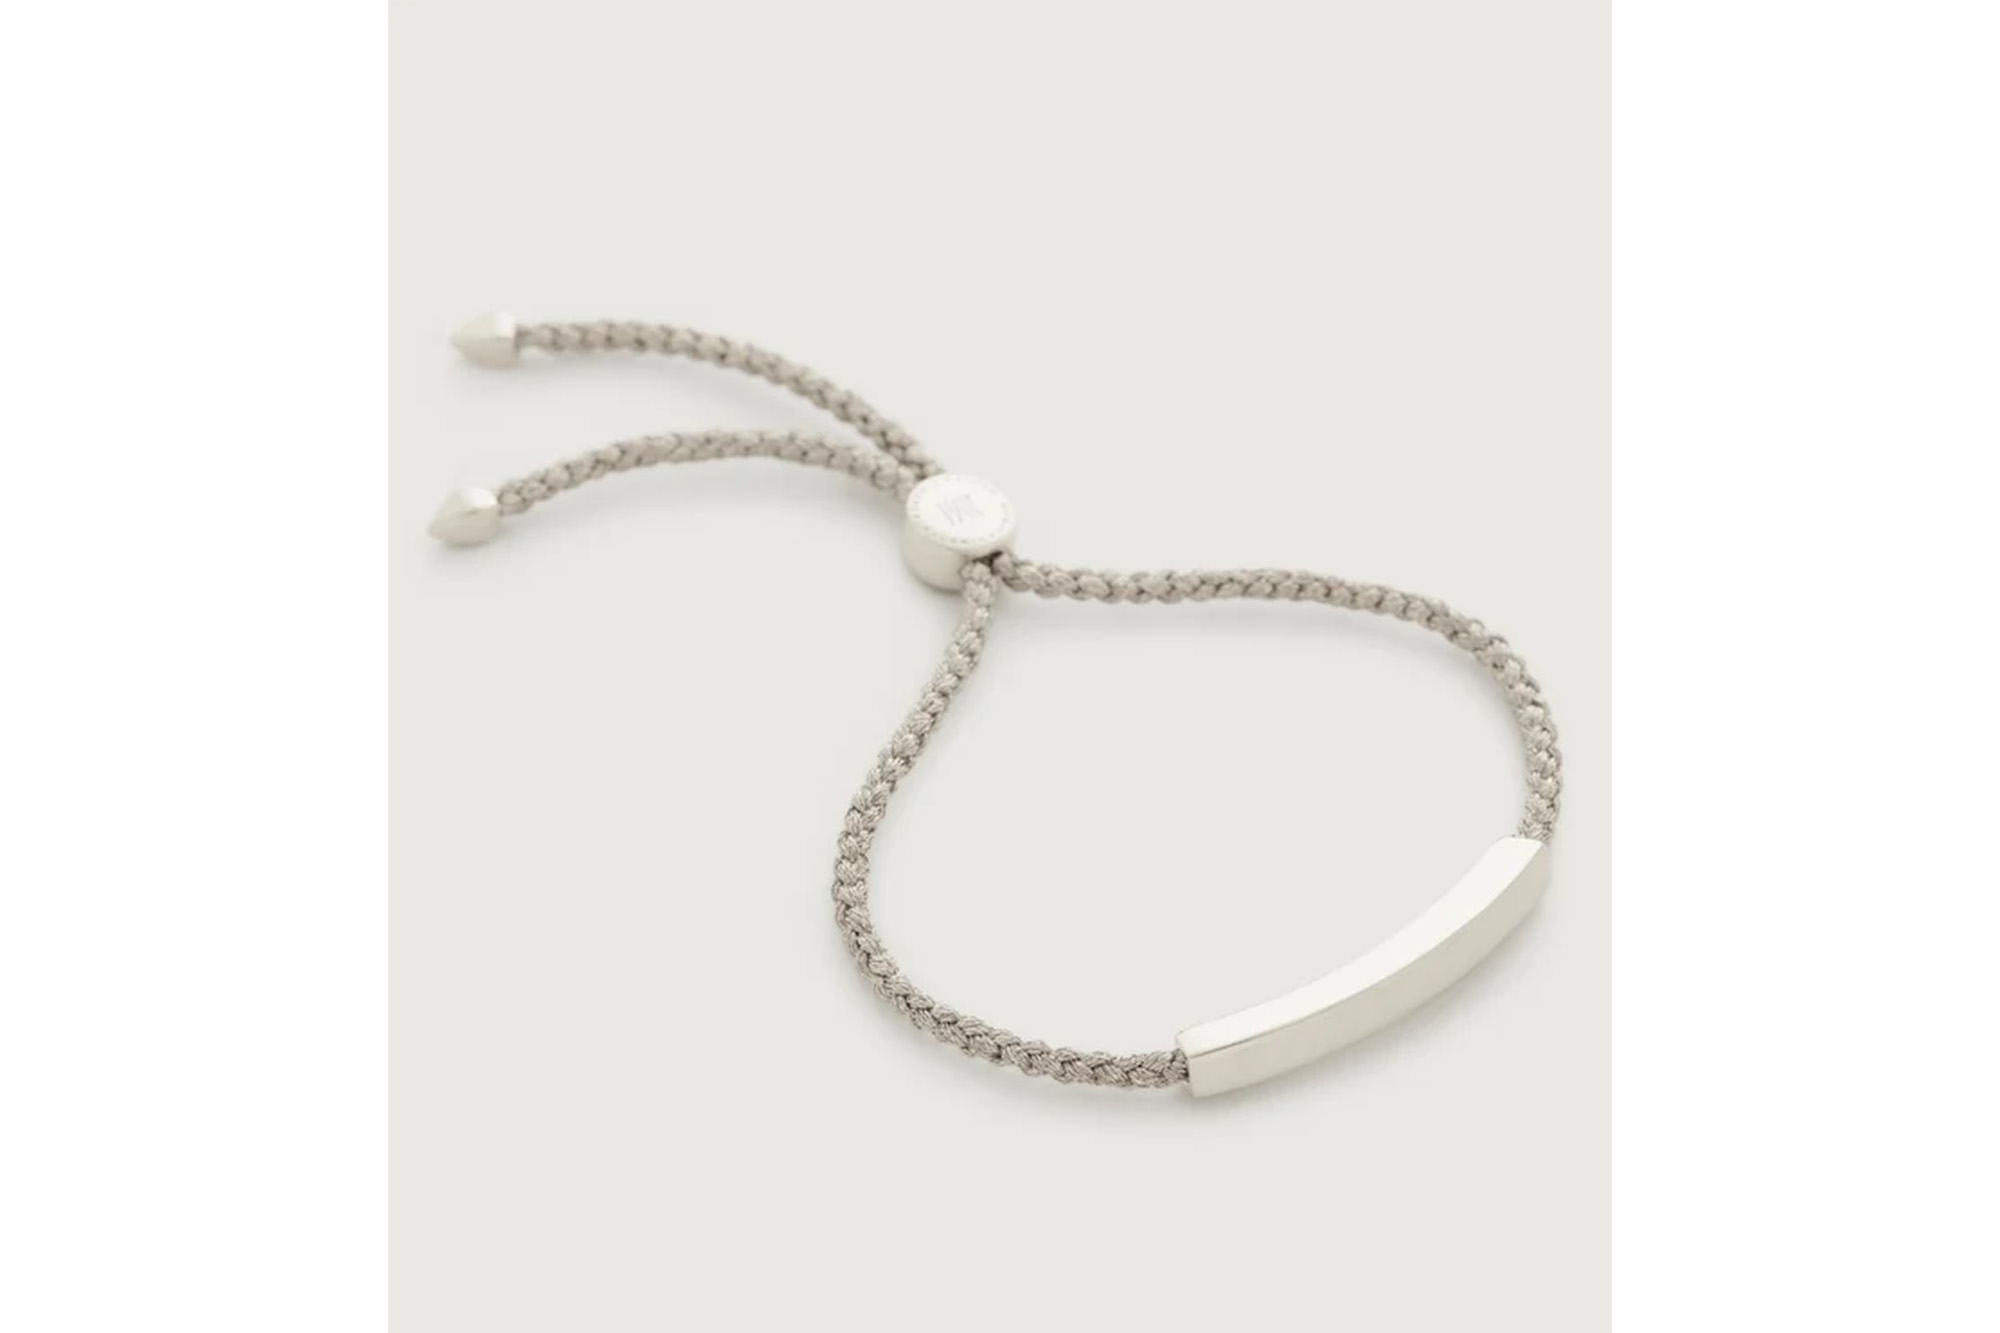 A silver linear friendship bracelet